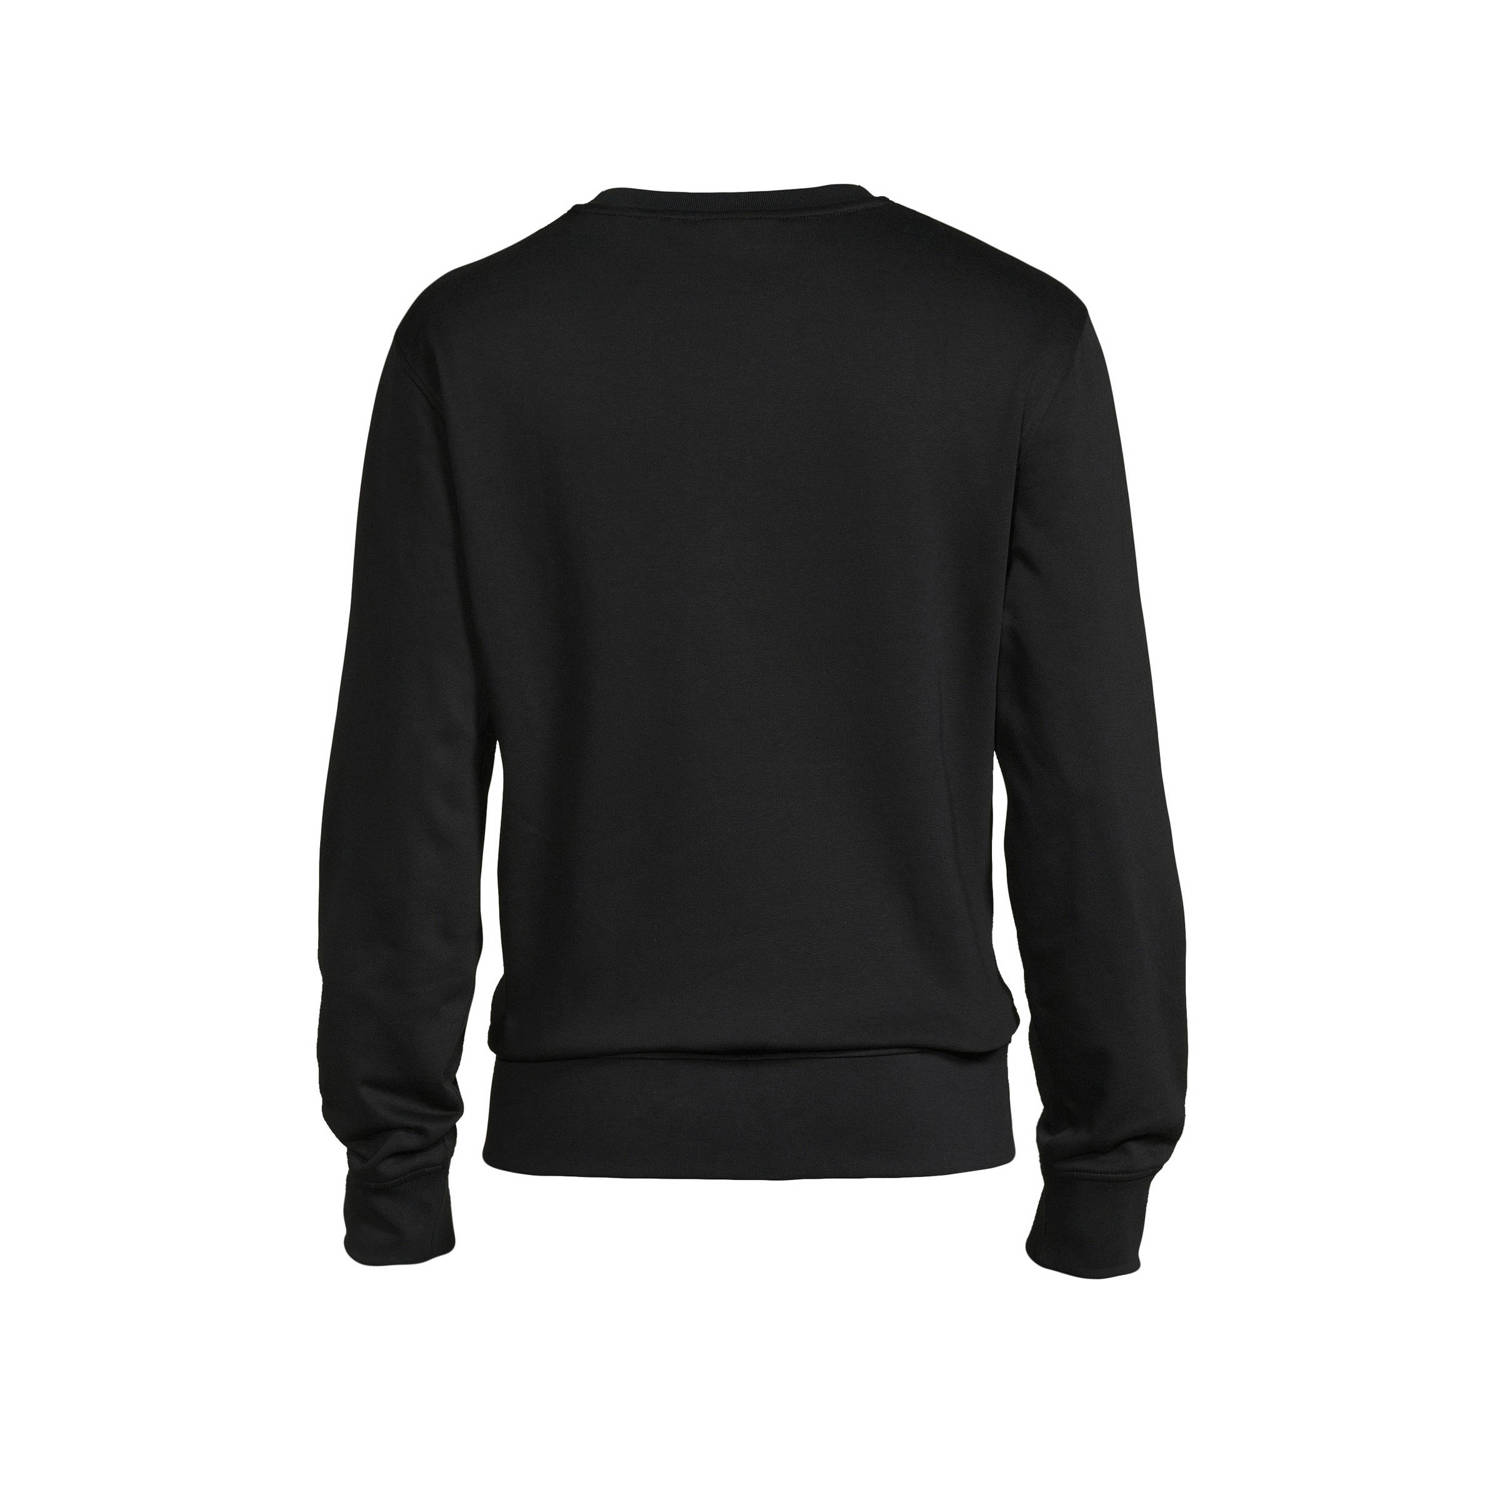 GANT sweater met logo black